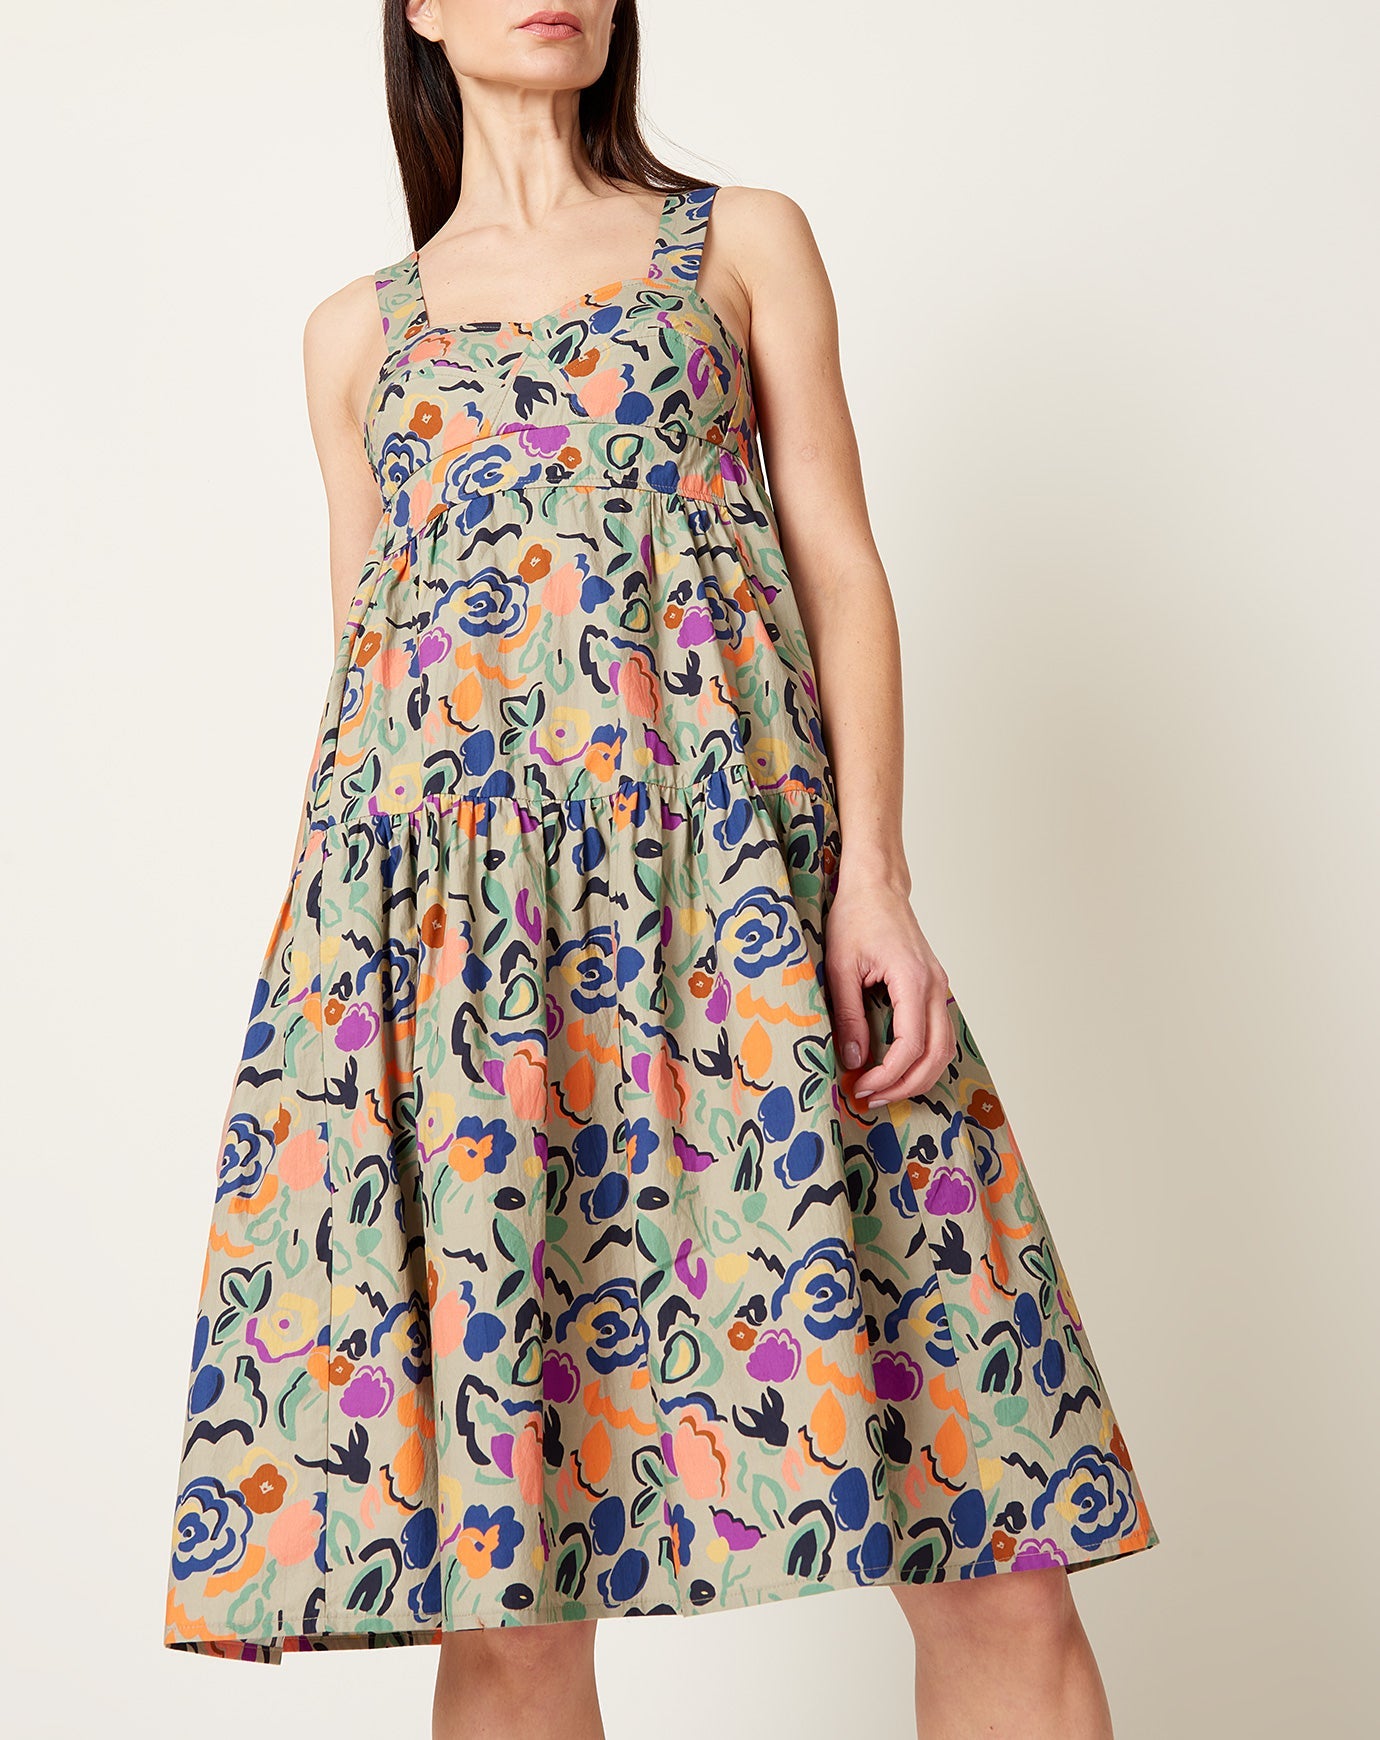 Caron Callahan Danya Dress in Graphic Floral Poplin